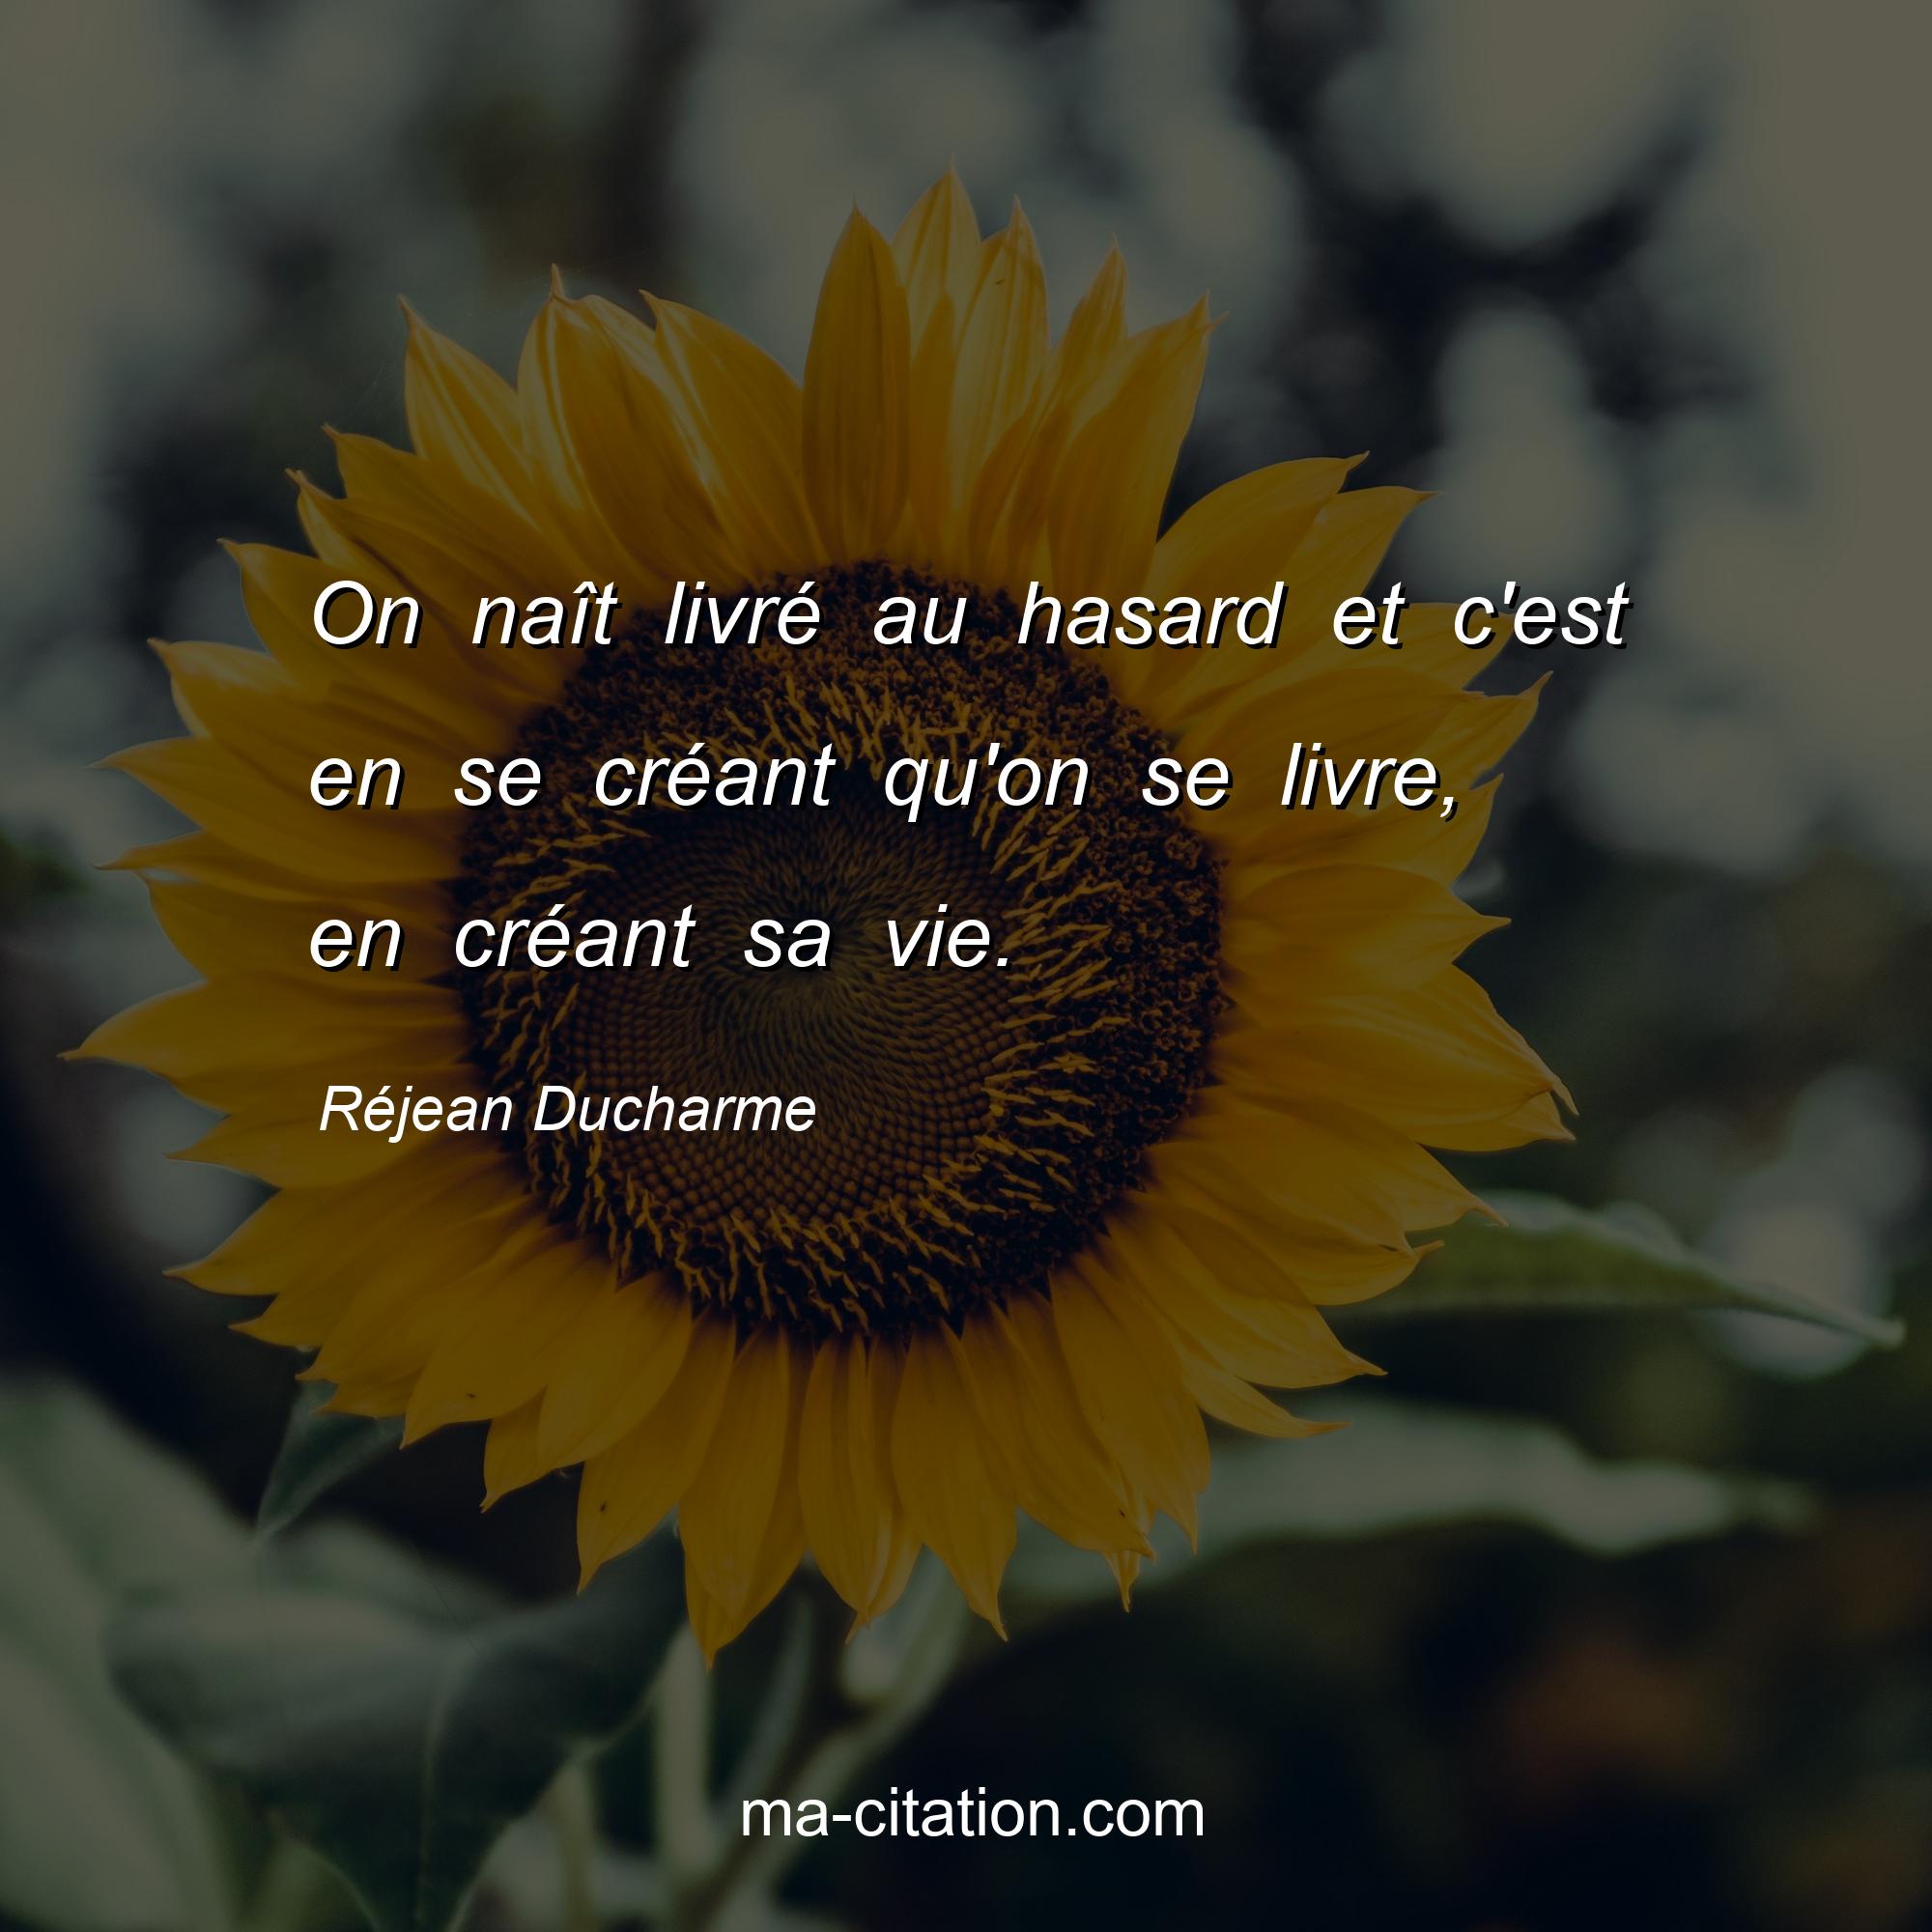 Réjean Ducharme : On naît livré au hasard et c'est en se créant qu'on se livre, en créant sa vie.